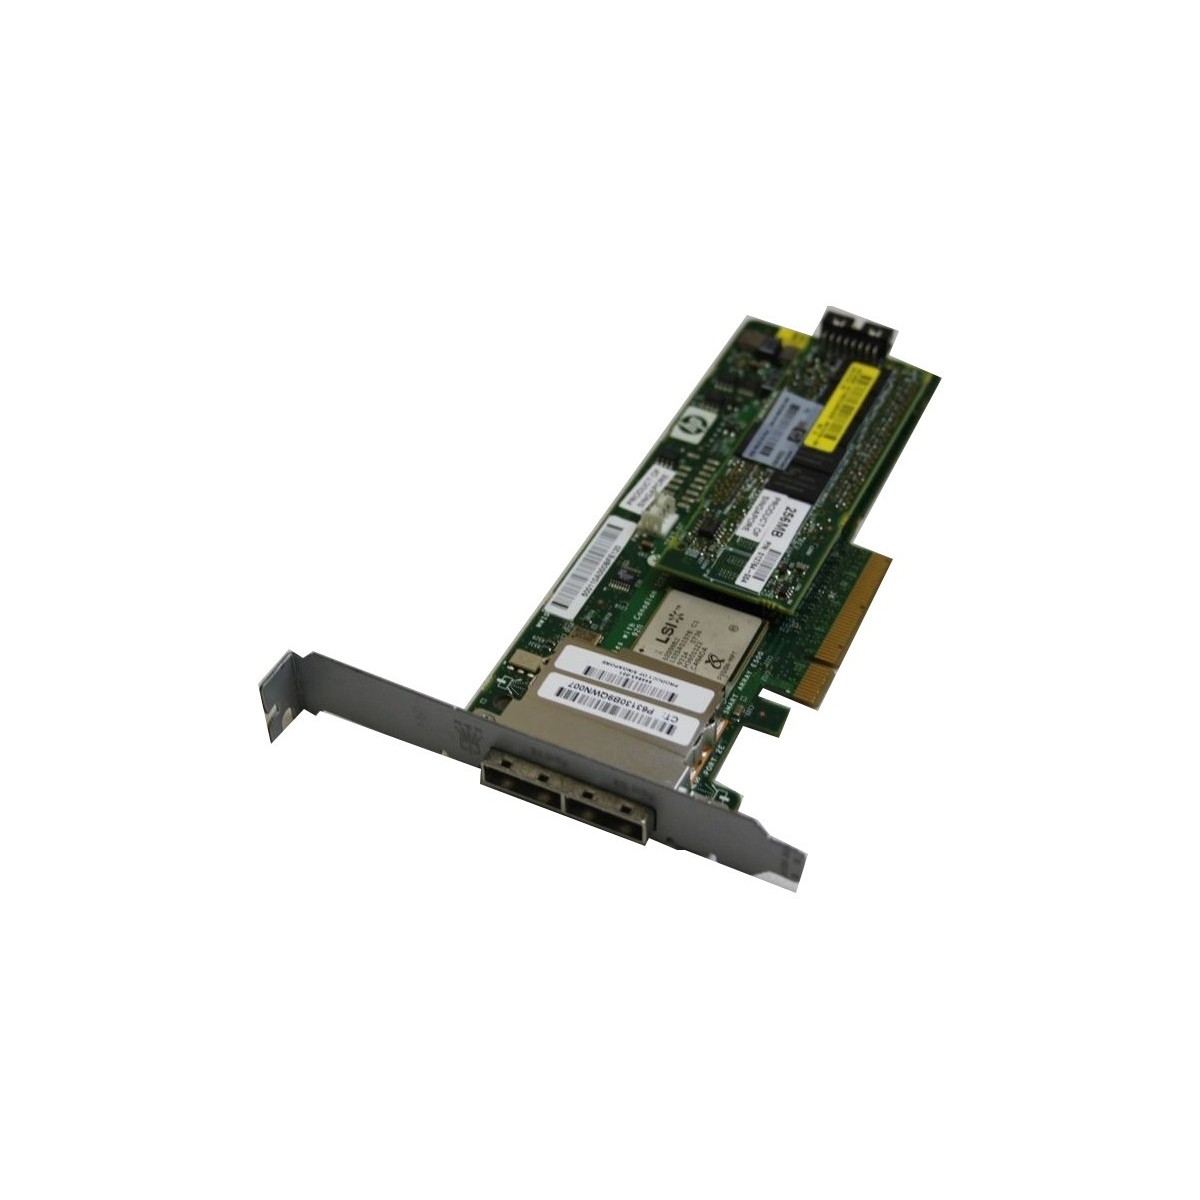 HP SMART ARRAY E500 256MB SAS RAID 443999-001